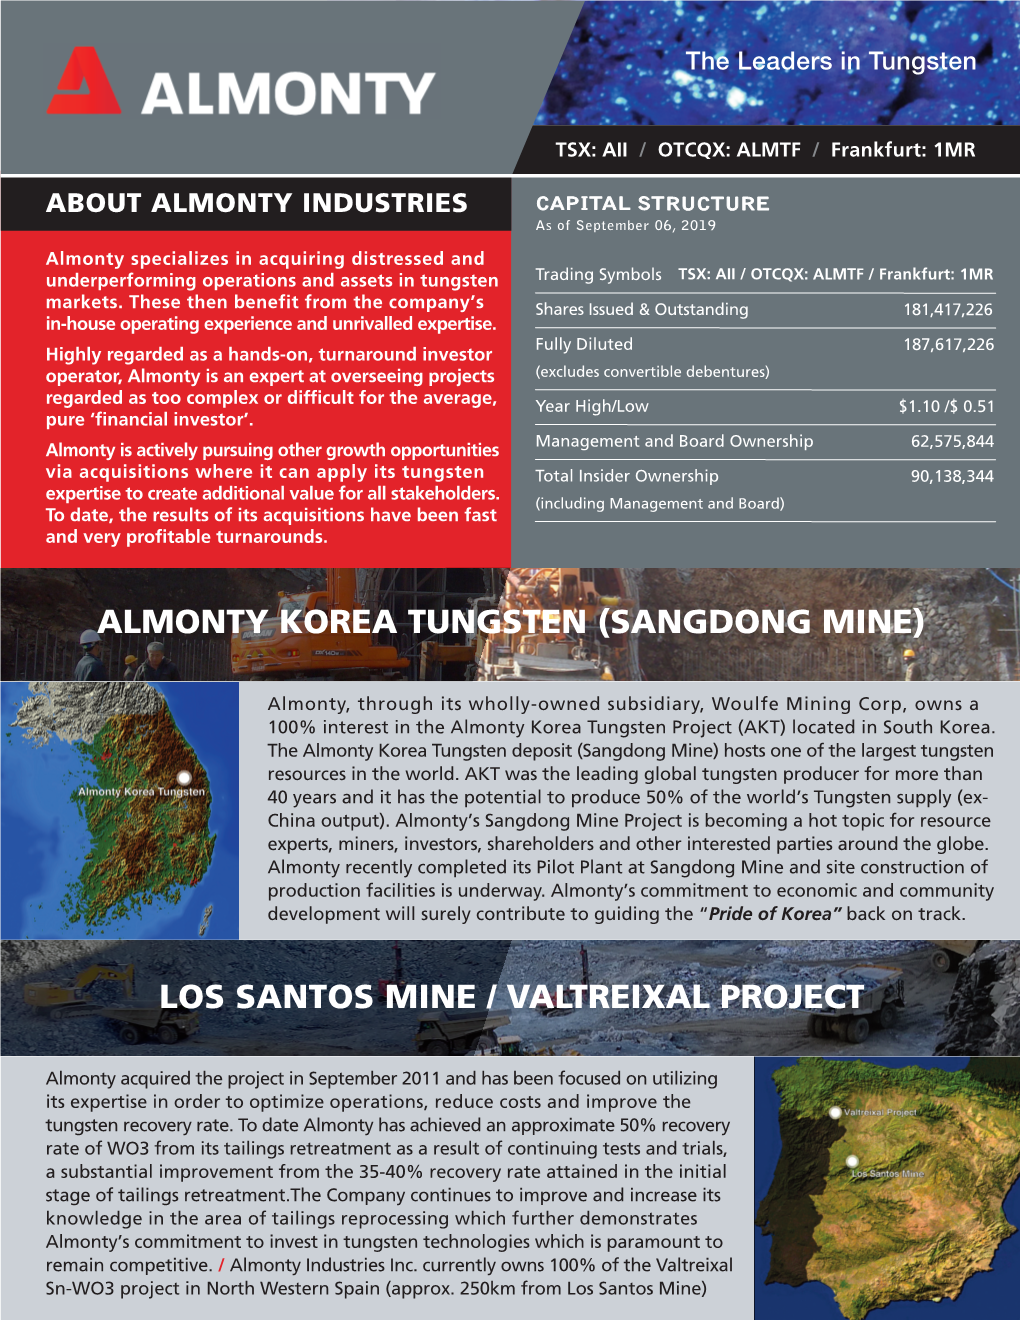 Los Santos Mine / Valtreixal Project